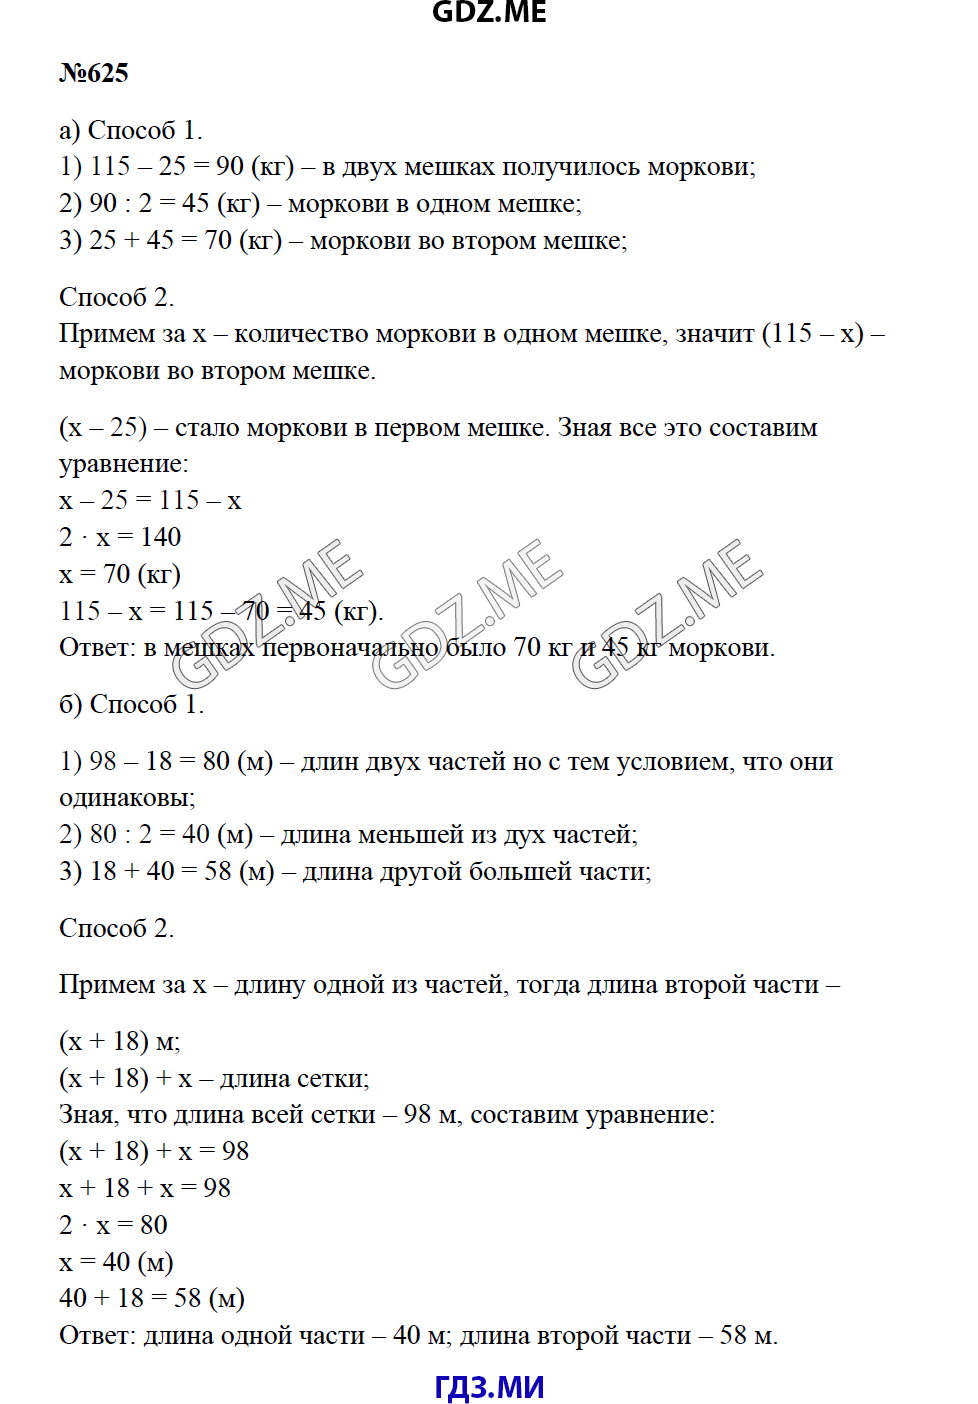 Страница (упражнение) 625 учебника. Ответ на вопрос упражнения 625 ГДЗ решебник по математике 5 класс Зубарева Мордкович